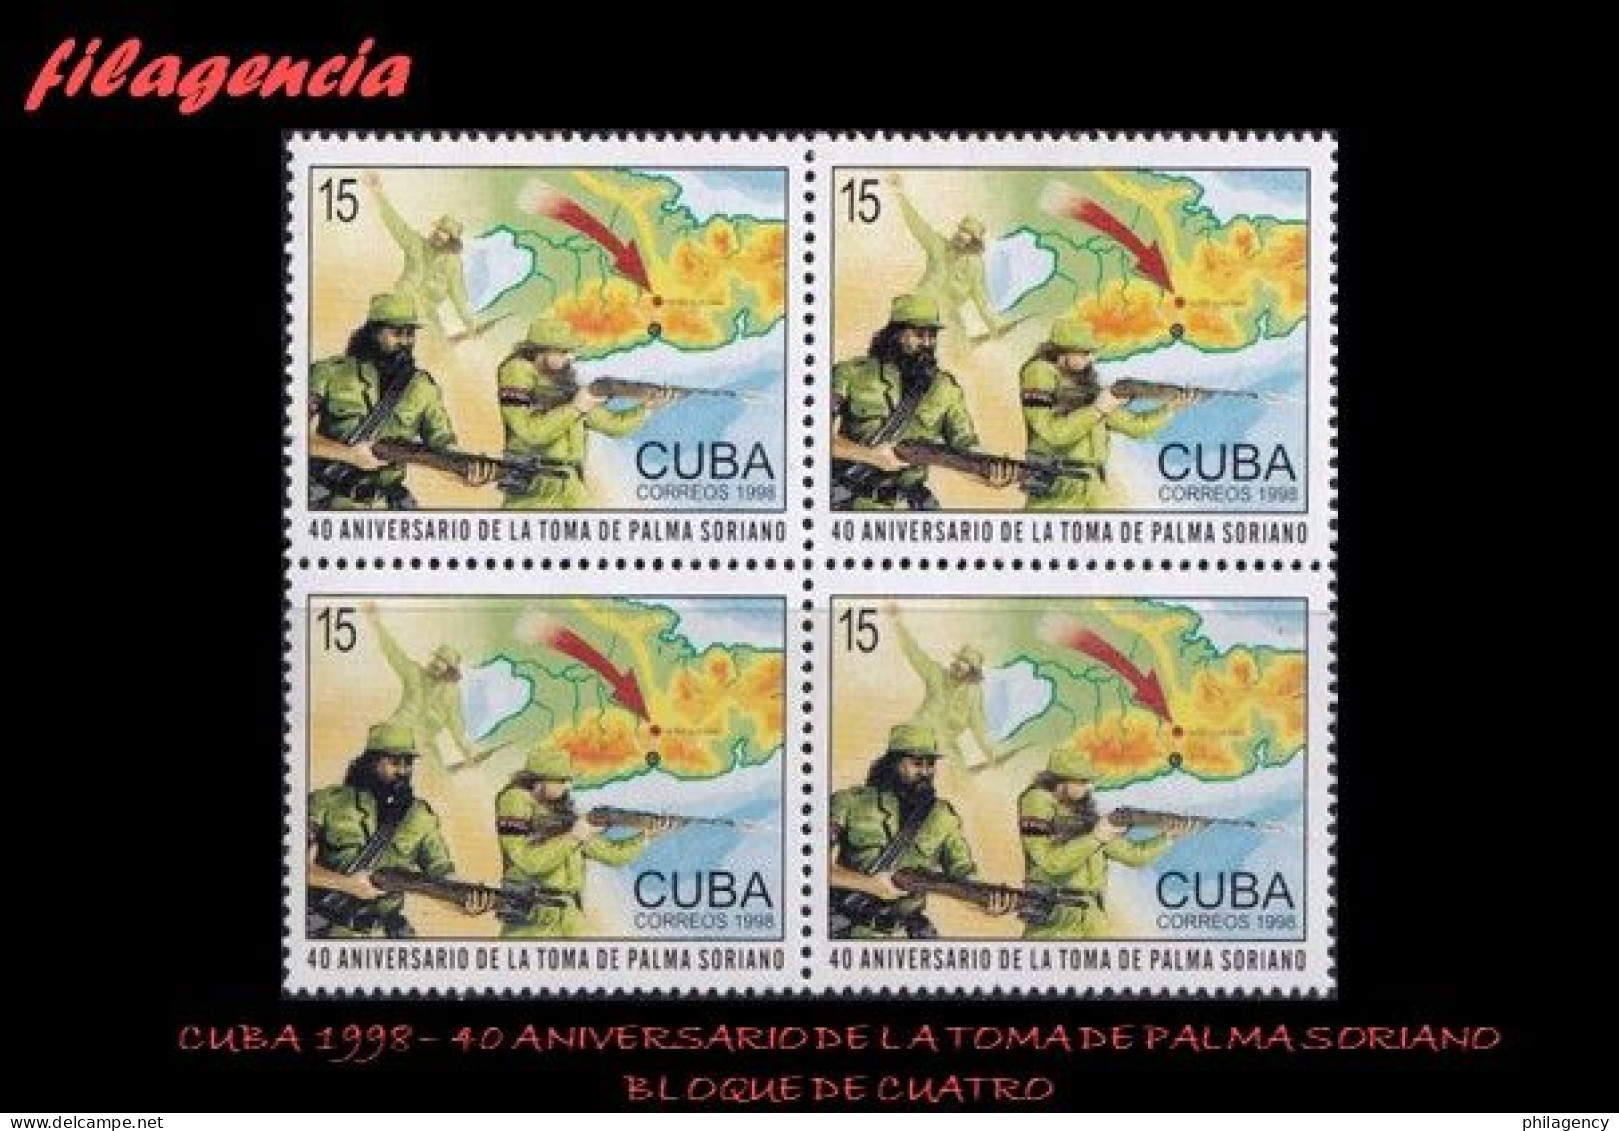 CUBA. BLOQUES DE CUATRO. 1998-35 40 ANIVERSARIO DE LA TOMA DE PALMA SORIANO - Unused Stamps